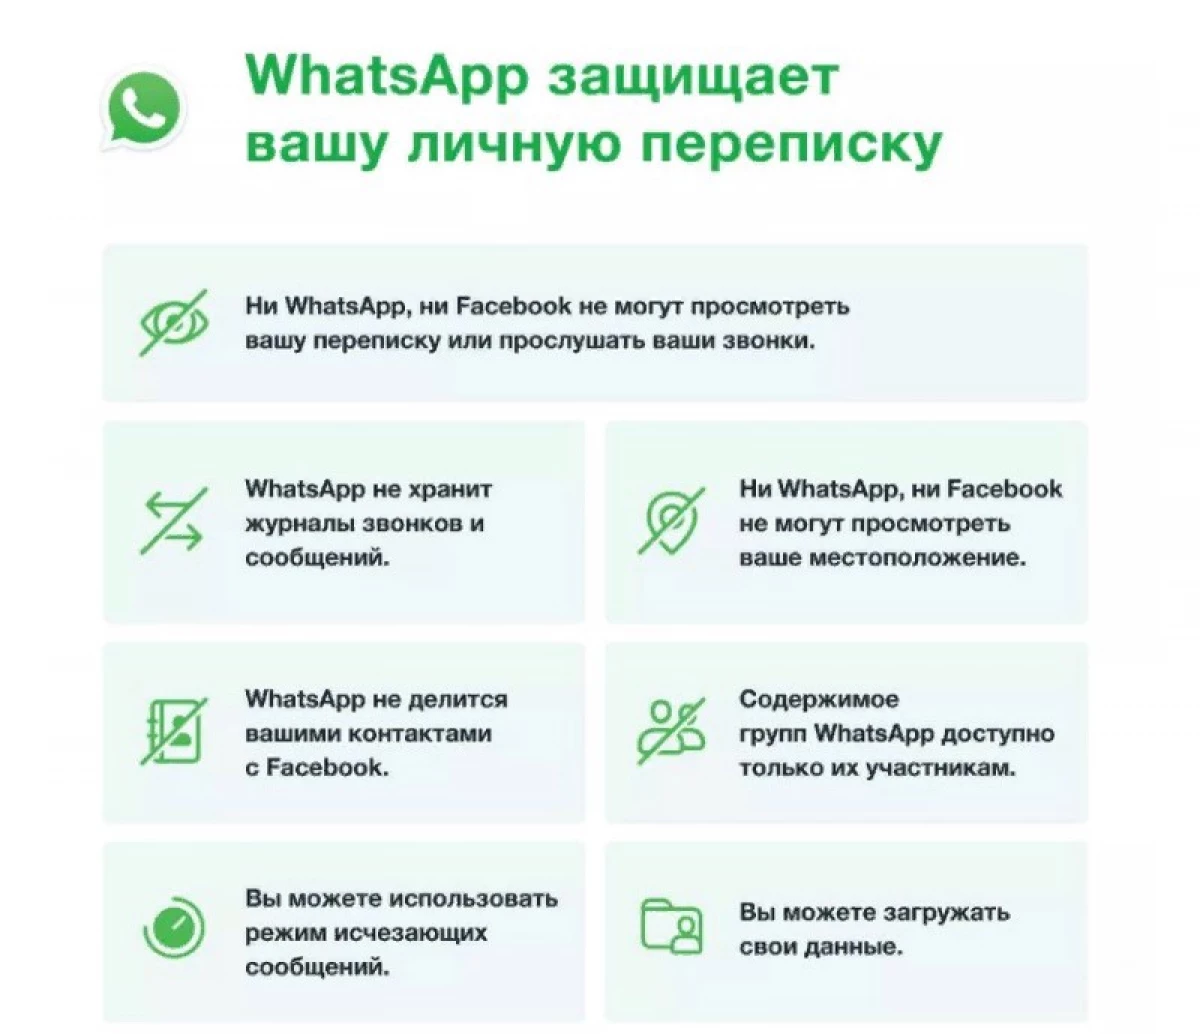 ستشارك WhatsApp بيانات المستخدم من Facebook. إذن الخاص بك لن يسأل 6388_5